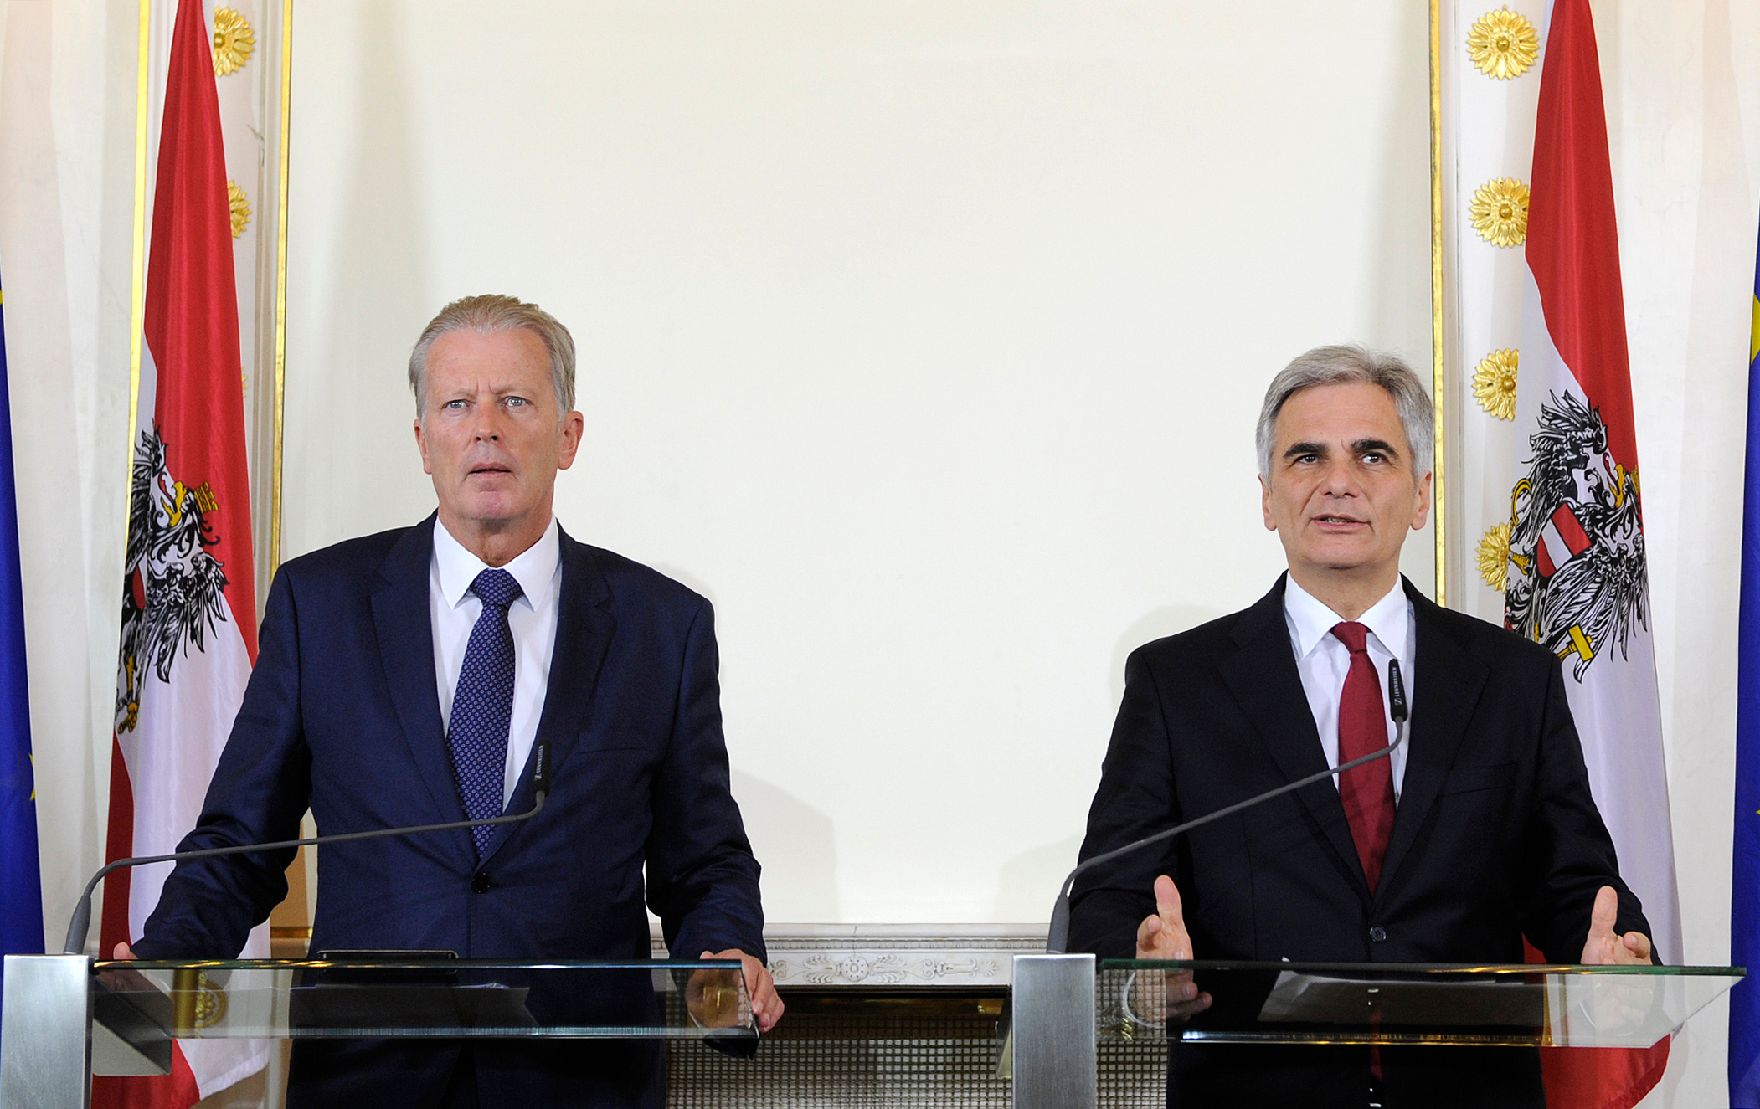 Bundeskanzler Werner Faymann (r.) mit Vizekanzler und Bundesminister Reinhold Mitterlehner (l.) beim Pressefoyer nach dem Ministerrat am 3. November 2015. 